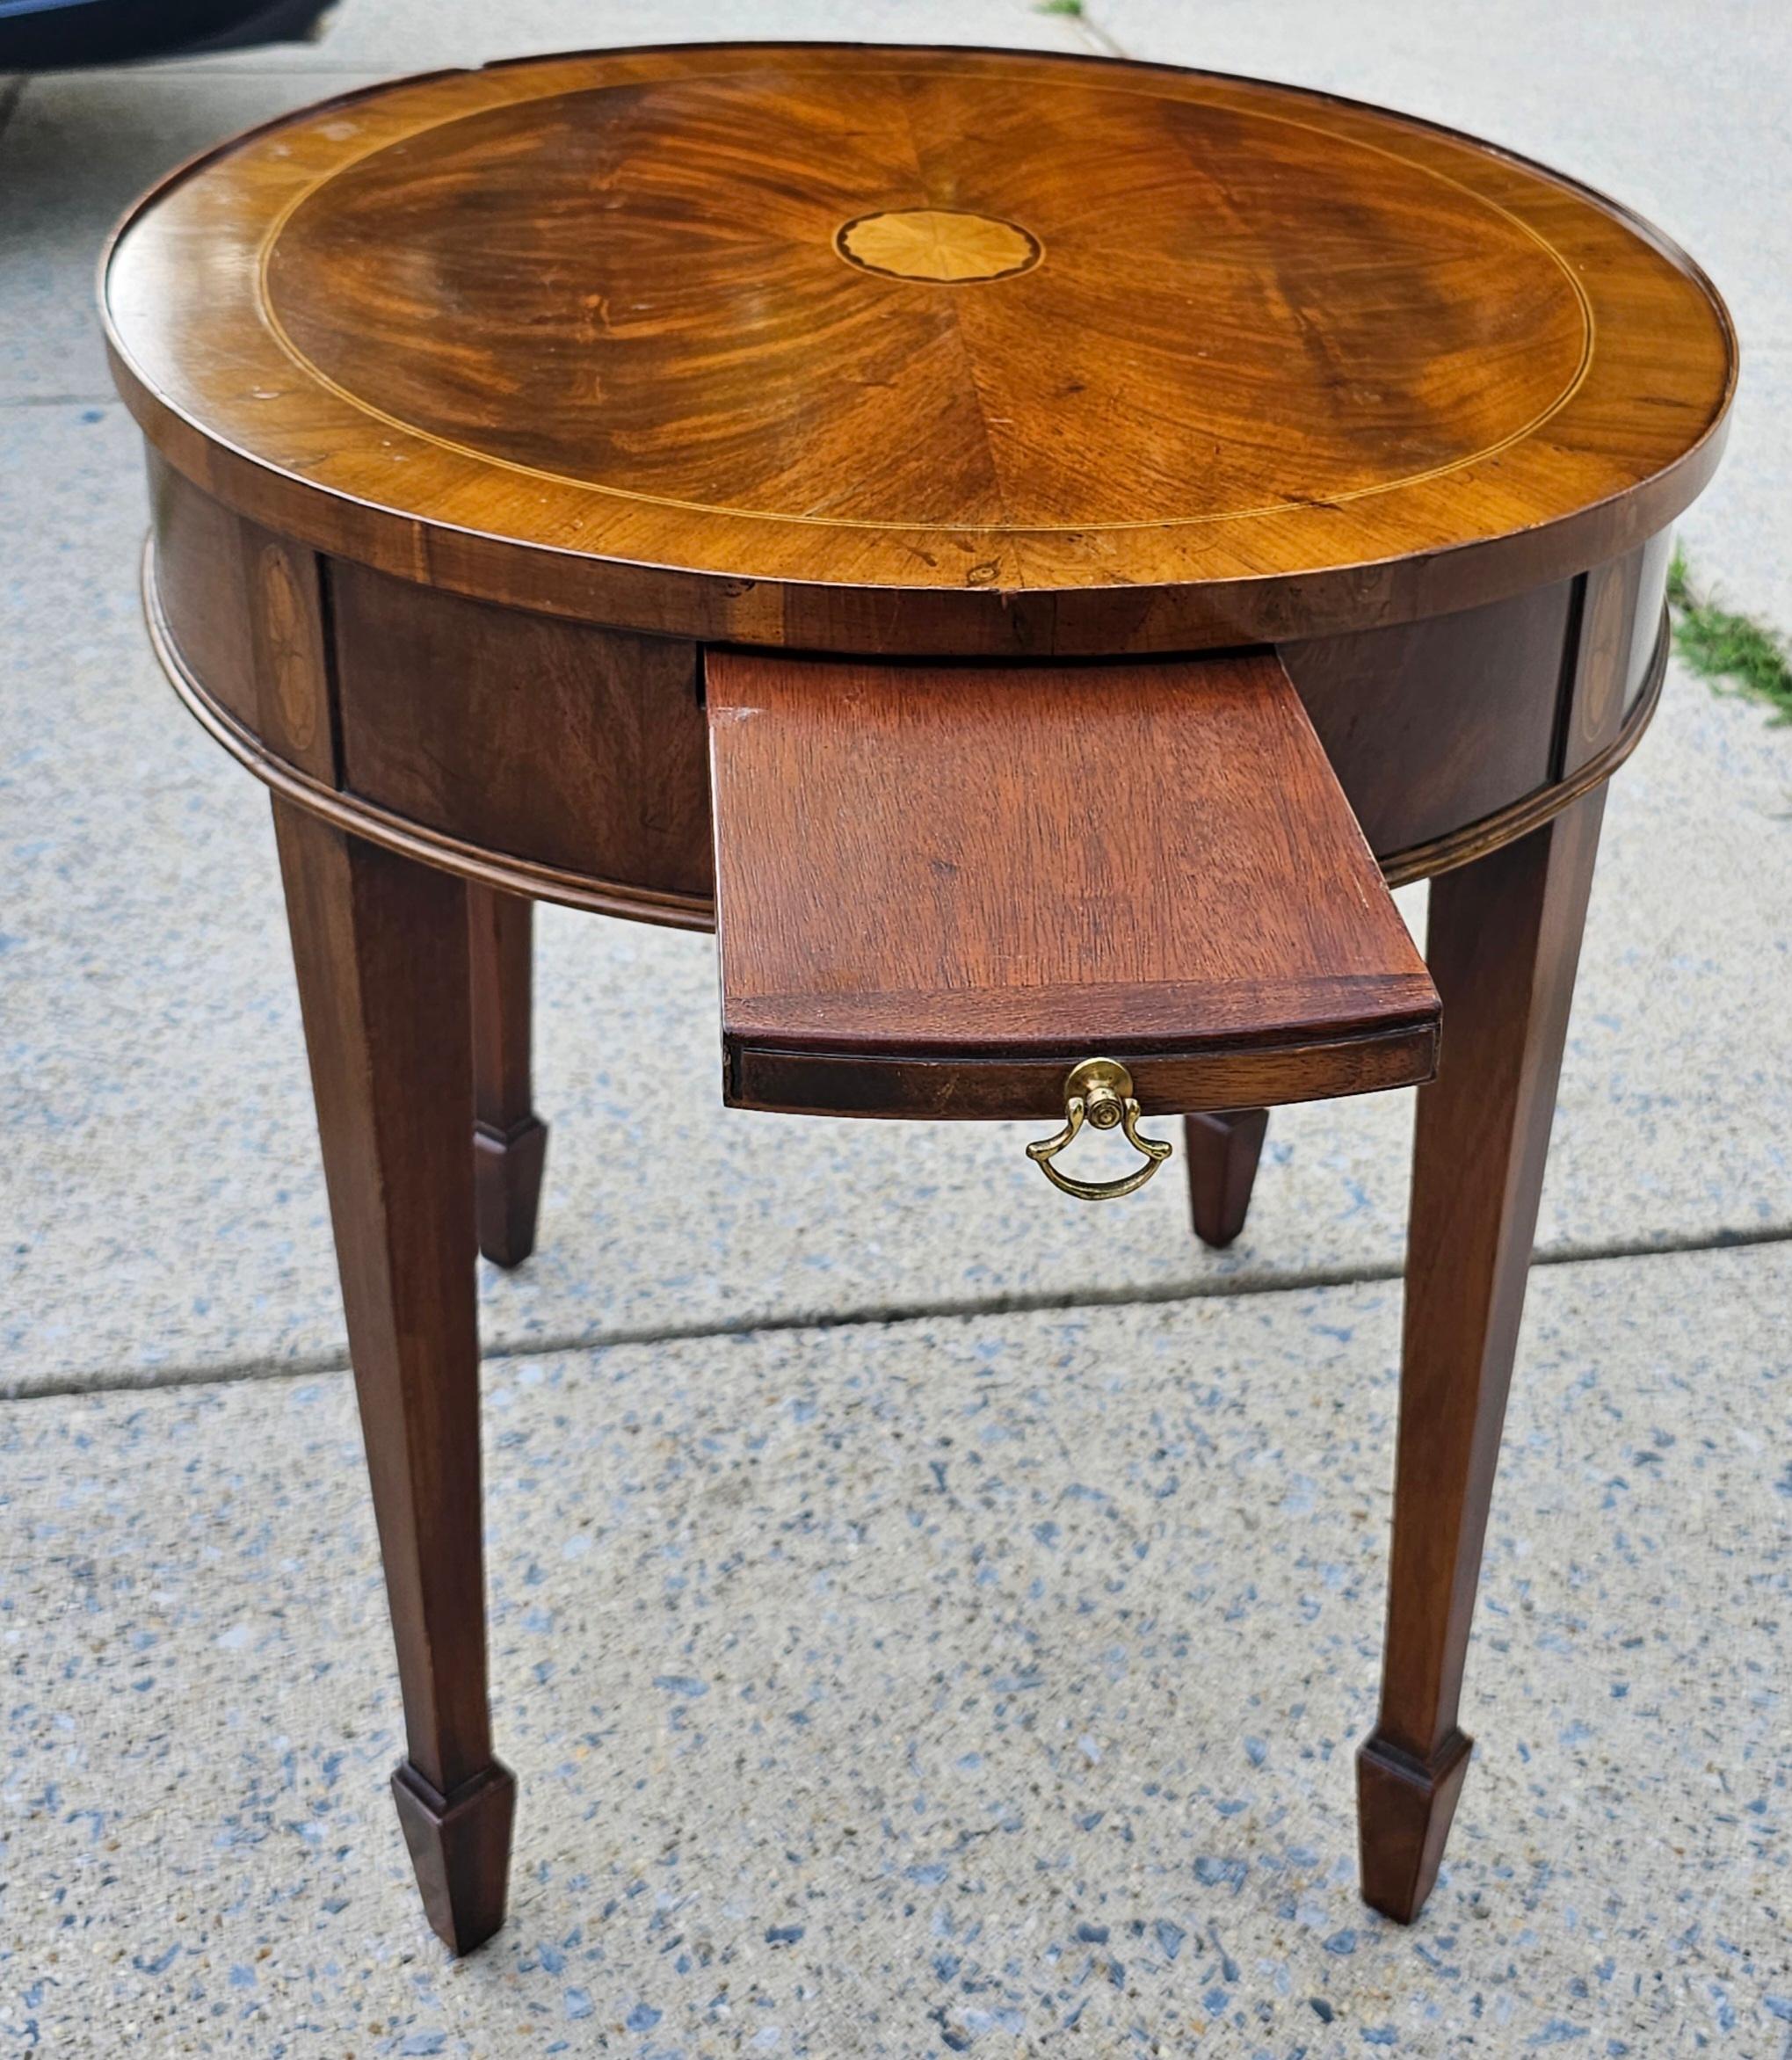 Ovaler Gueridon-Tisch aus geflammtem Mahagoni der Jahrhundertmitte mit ausziehbarem Tablett und konischen Beinen.
Maße 23